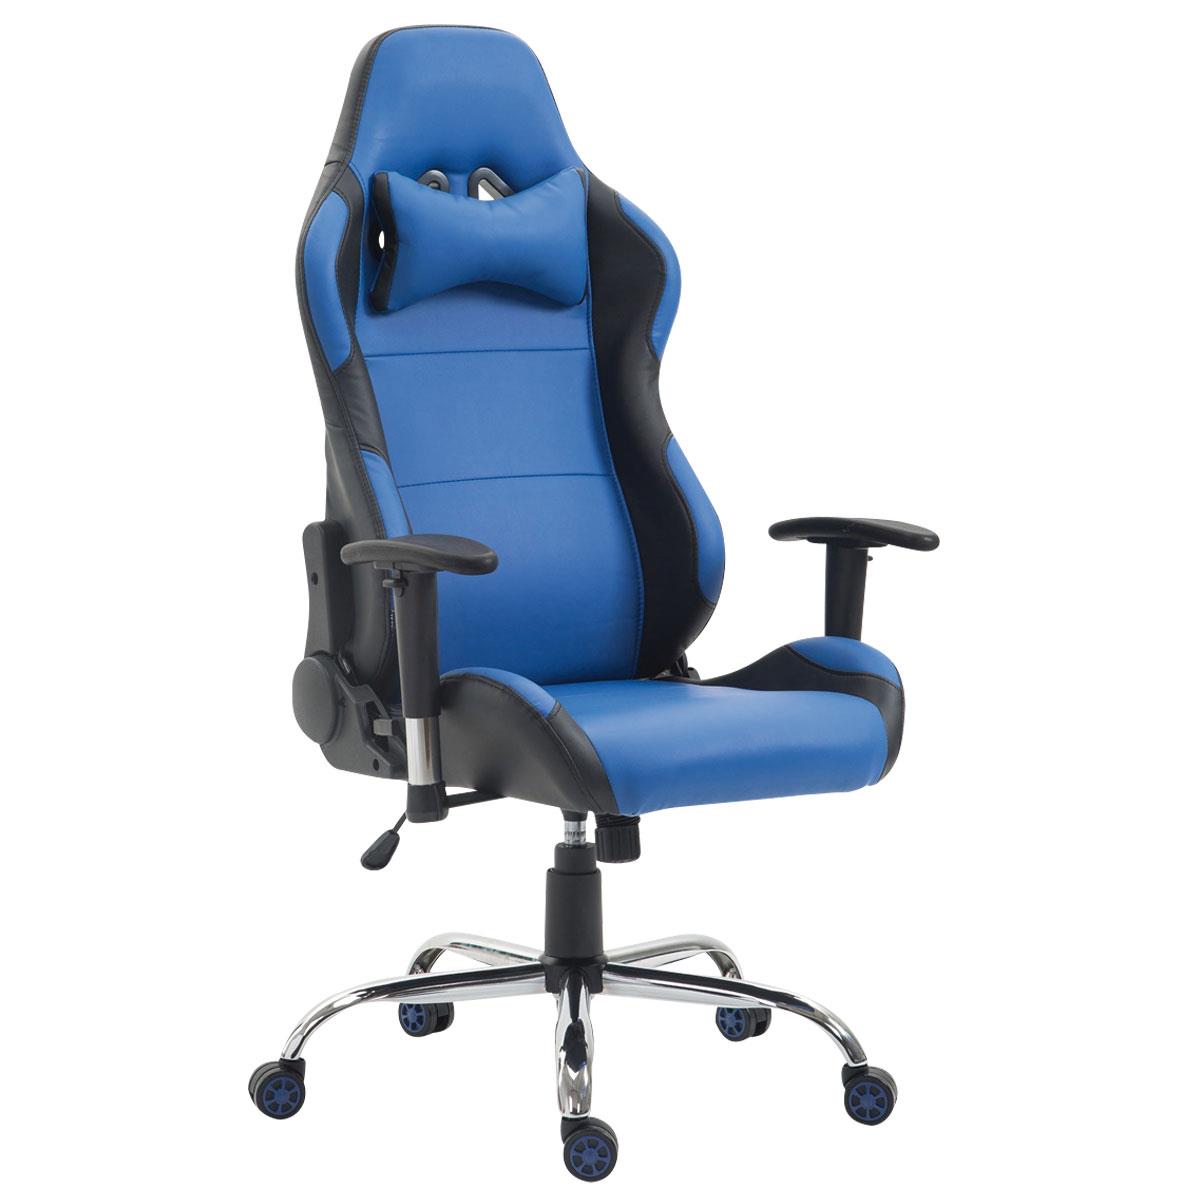 Cadeira Gaming ROSBY, Design Desportivo e Muito Confortável, Em Pele, Cor Azul